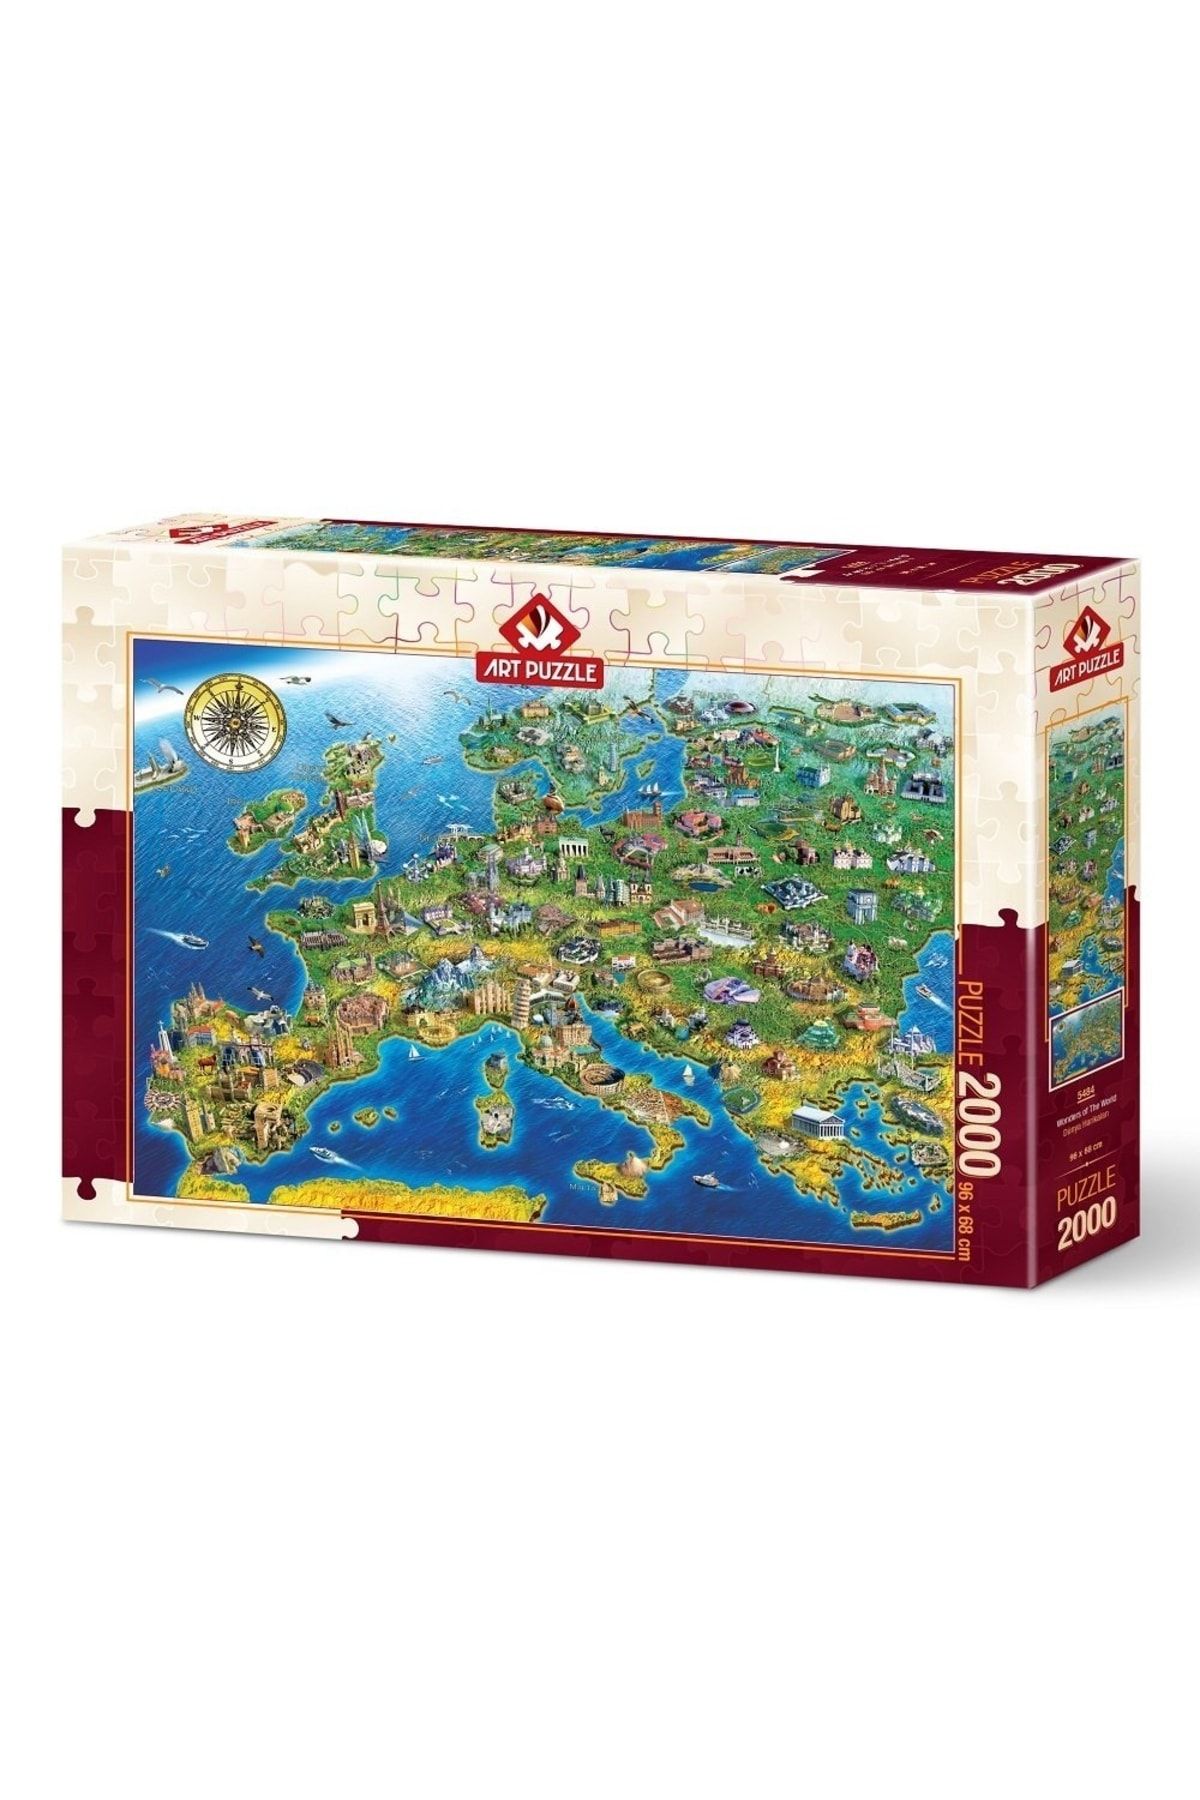 Doğan Oyuncak Dünyası Art Puzzle Dünya Harikaları 2000 Parça Puzzle 5484 - Puzzle Seti - Yapboz - Yap-boz Puzzle